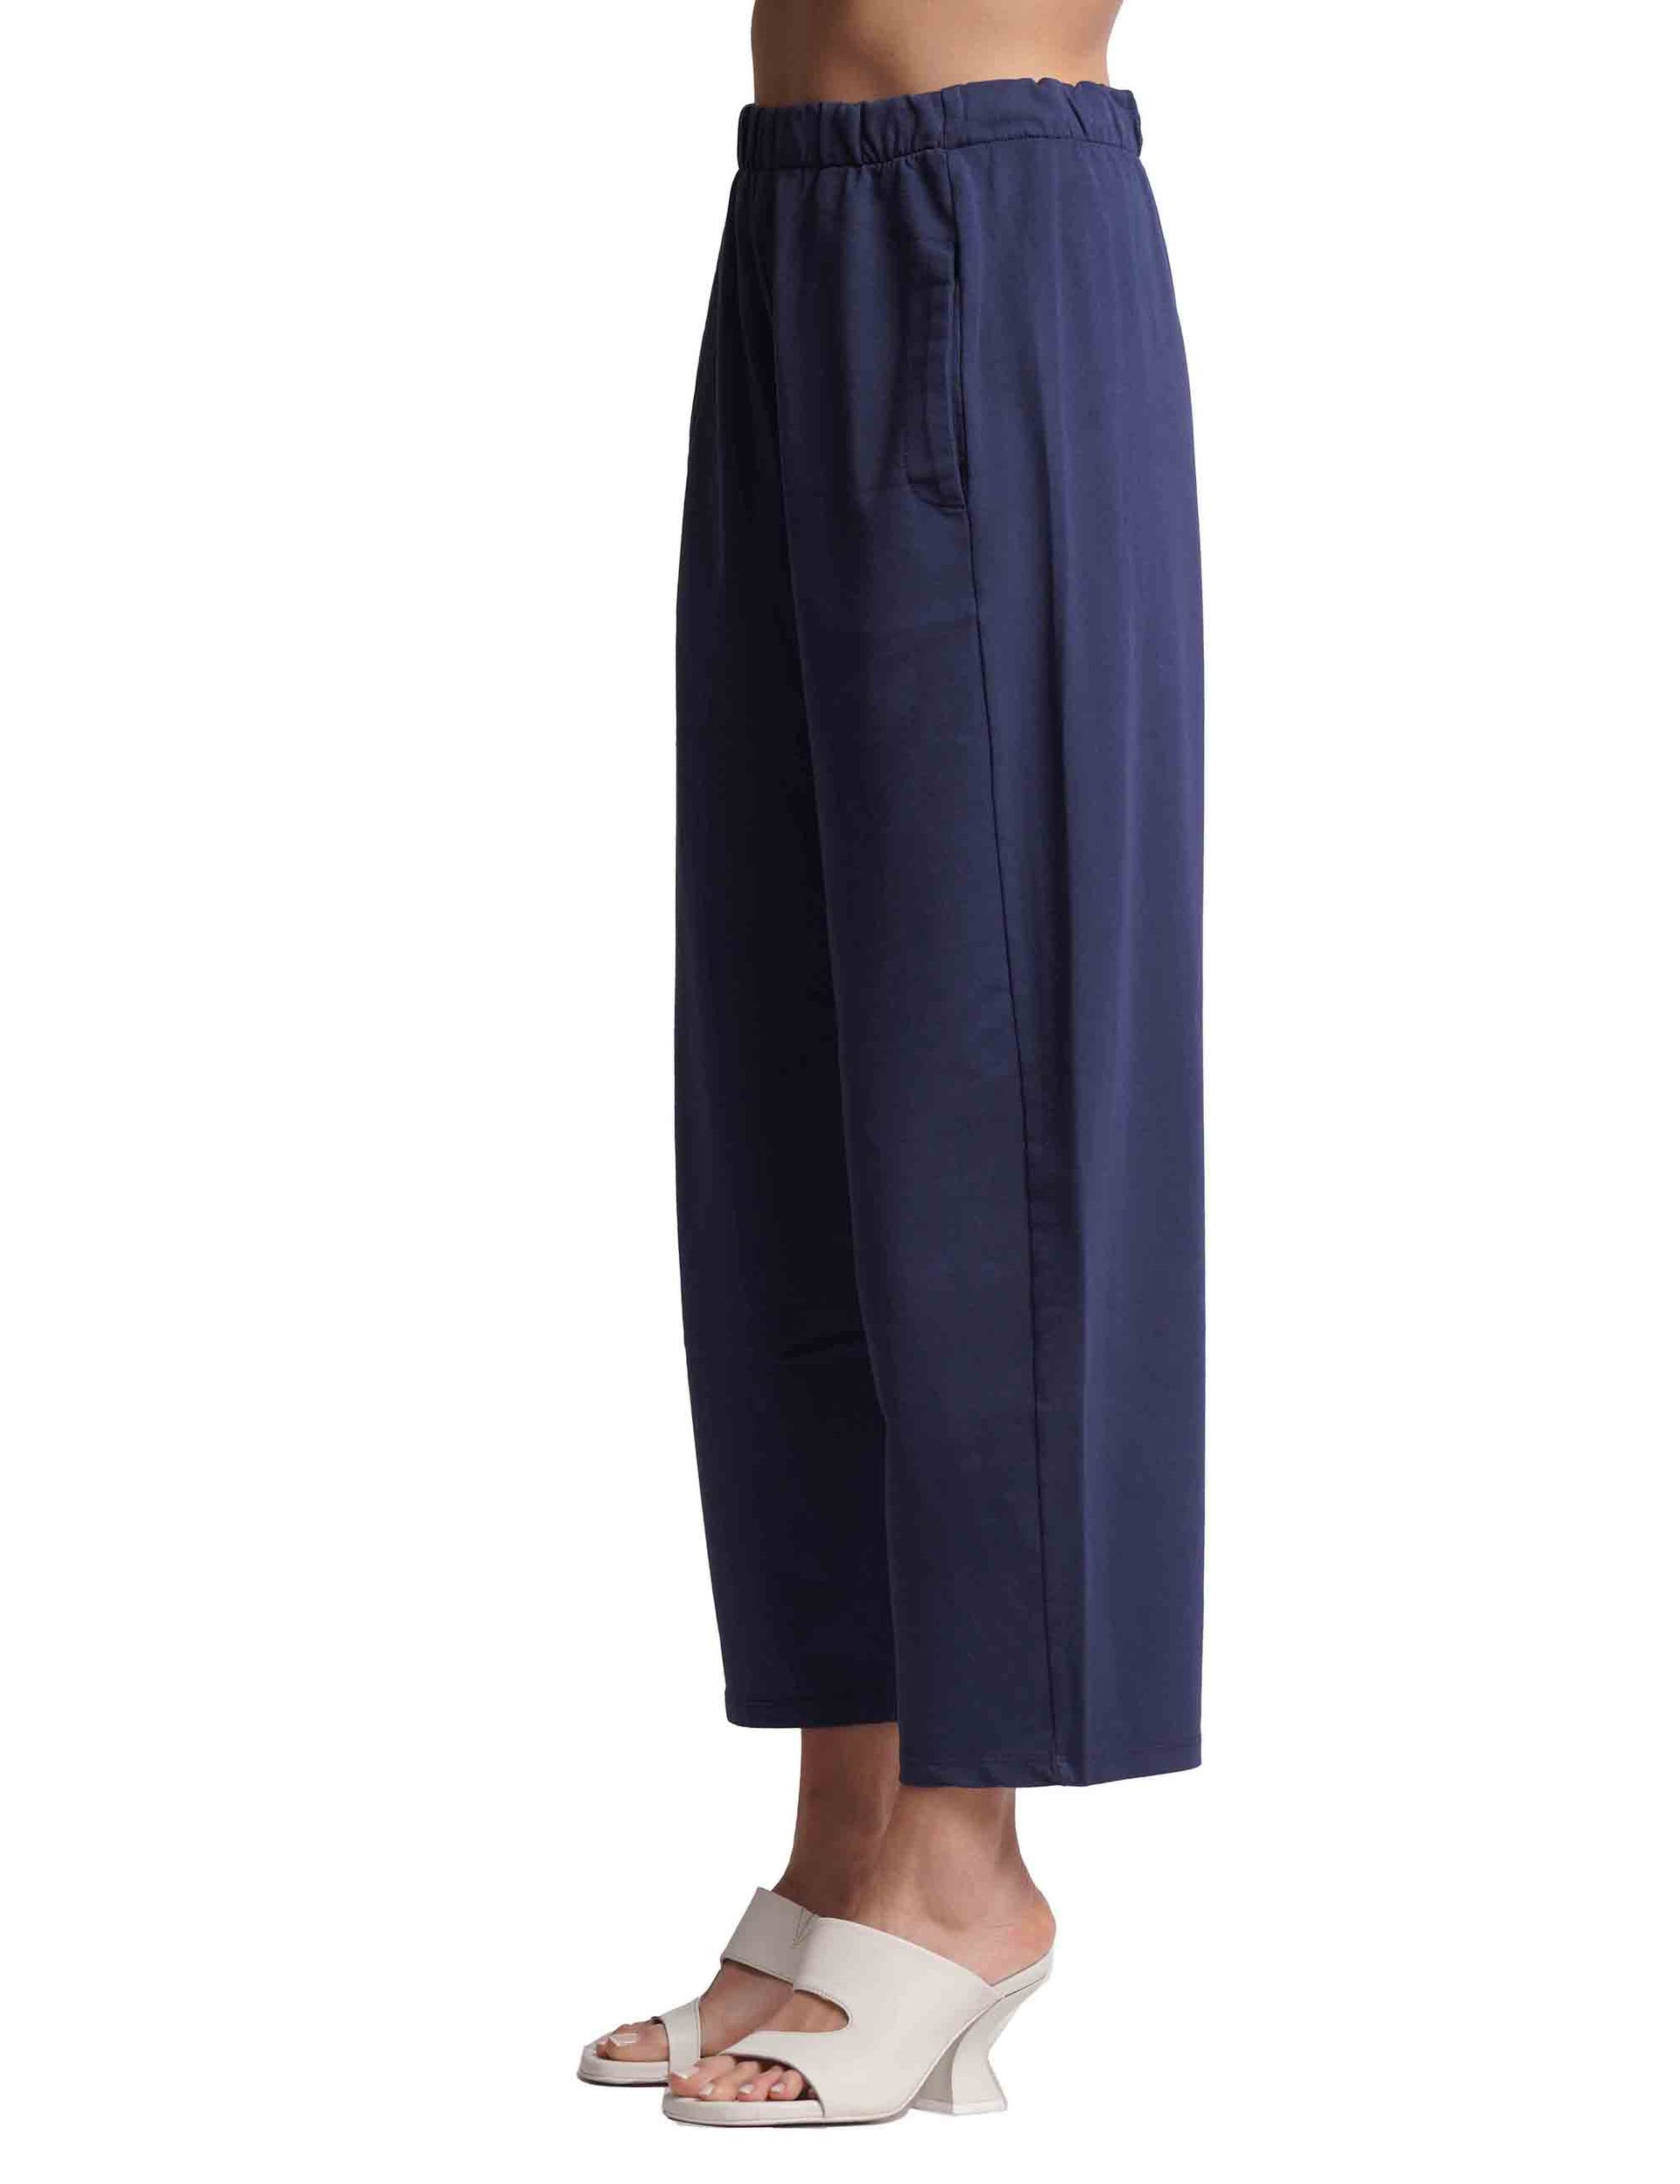 Pantaloni donna in cotone blu con elastico in vita